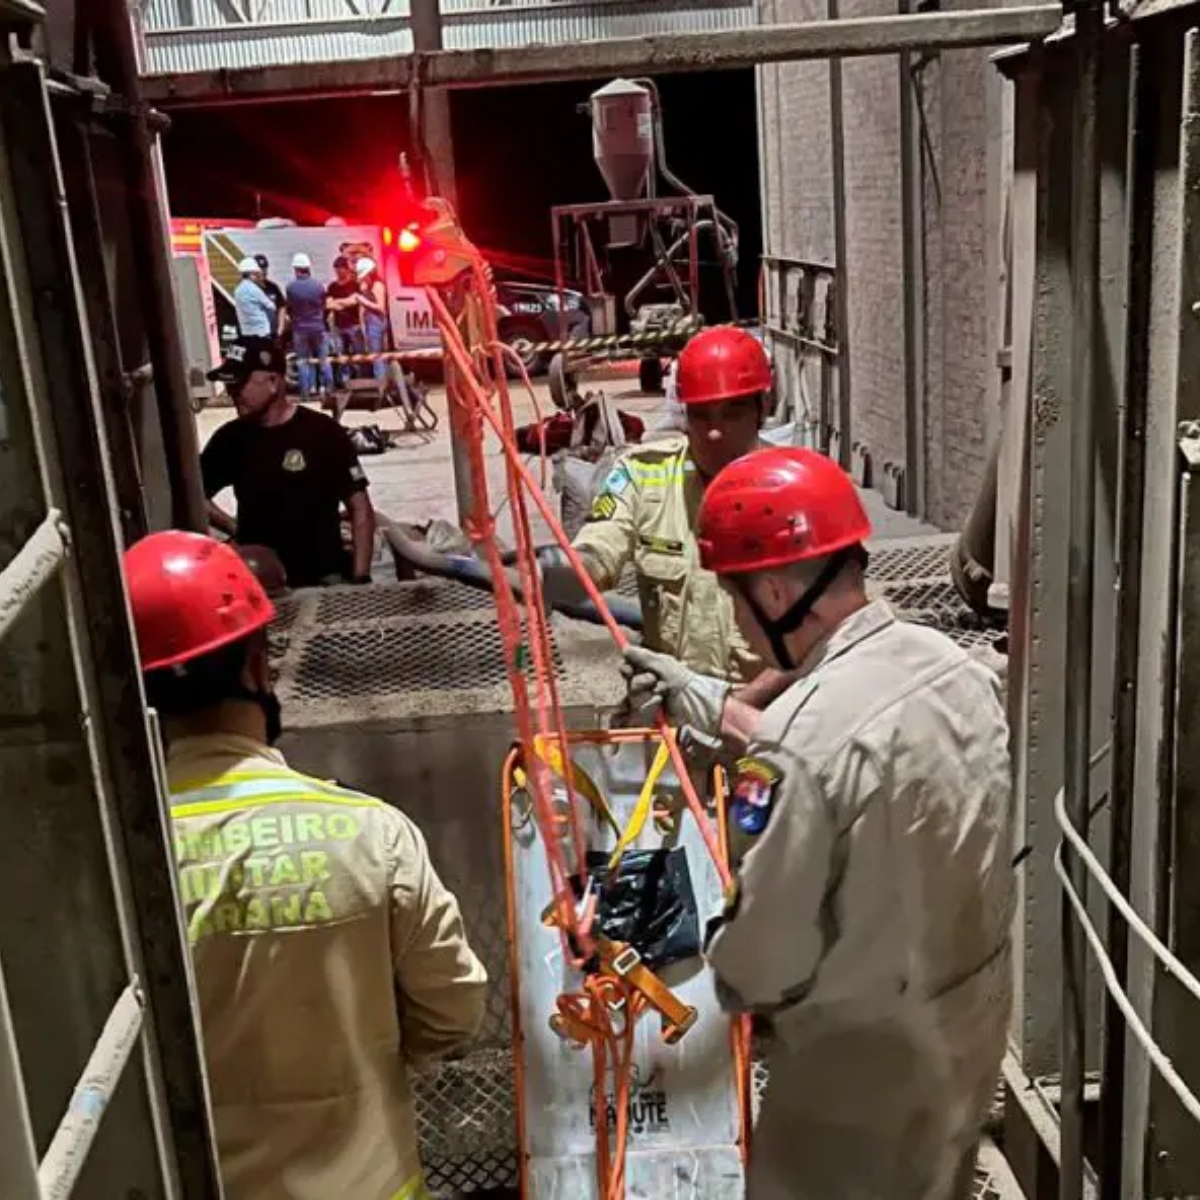  trabalhador morre fosso elevador 